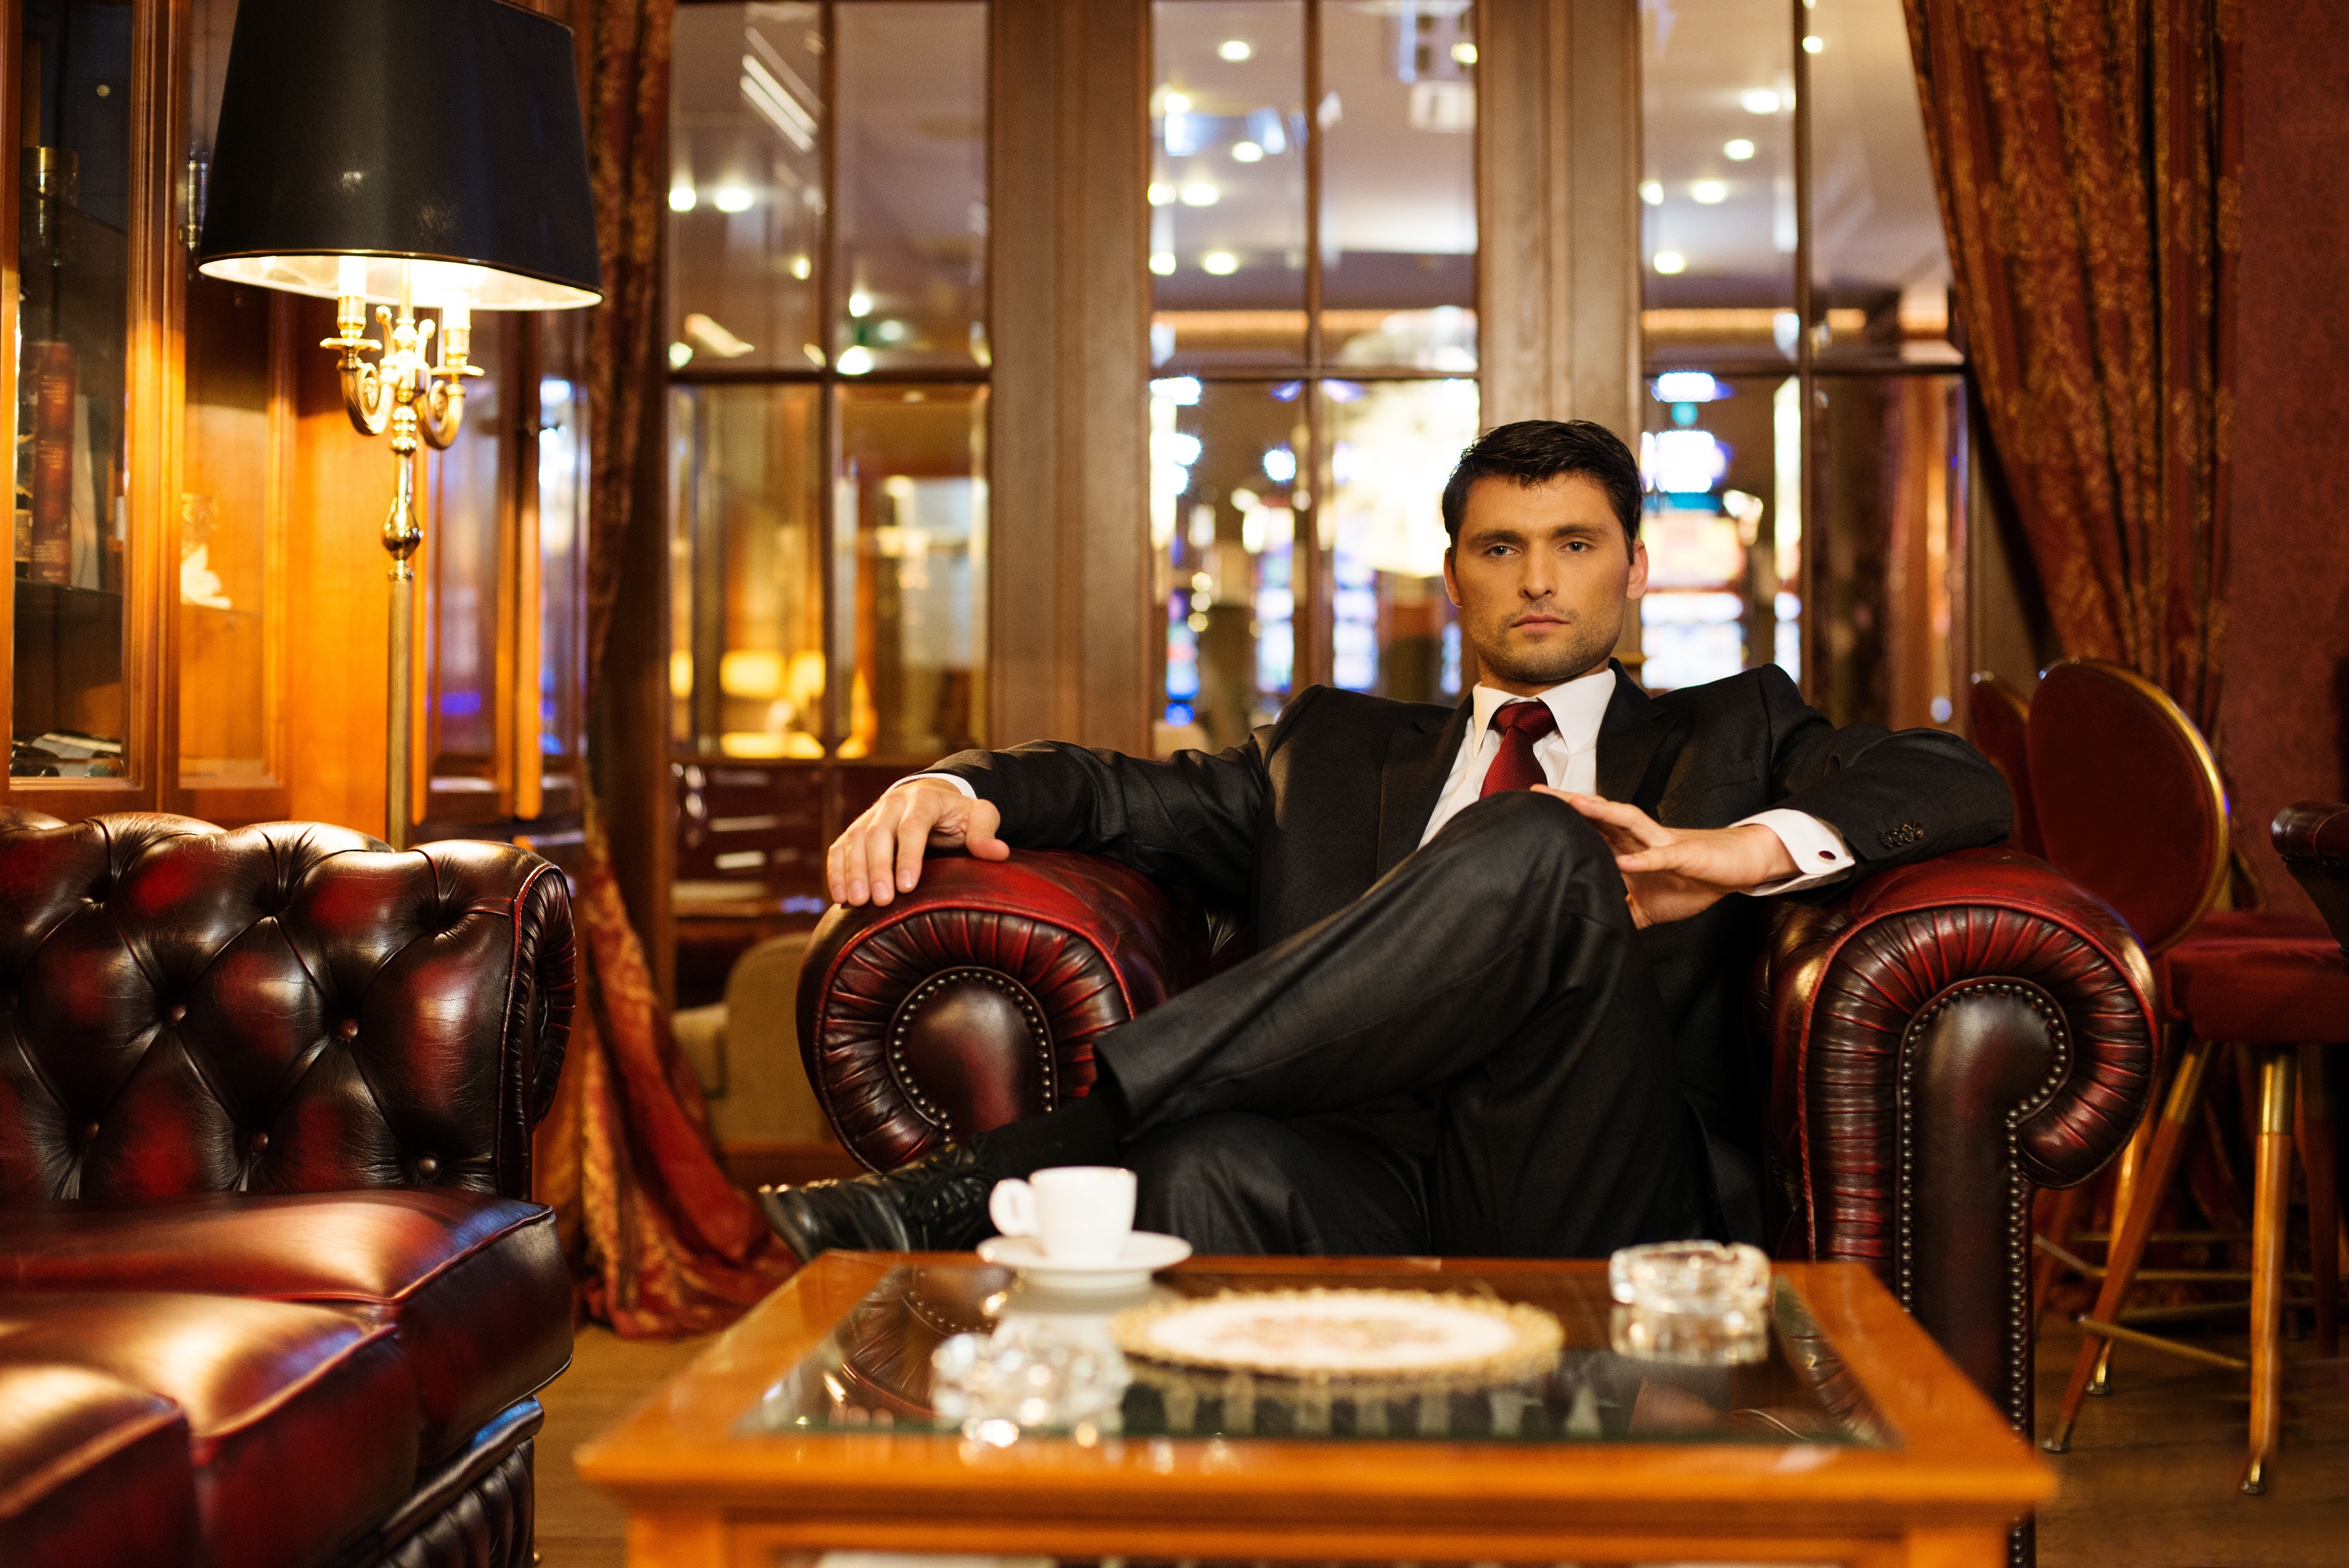 Confident handsome brunette sitting in luxury interior. | Source: Shutterstock